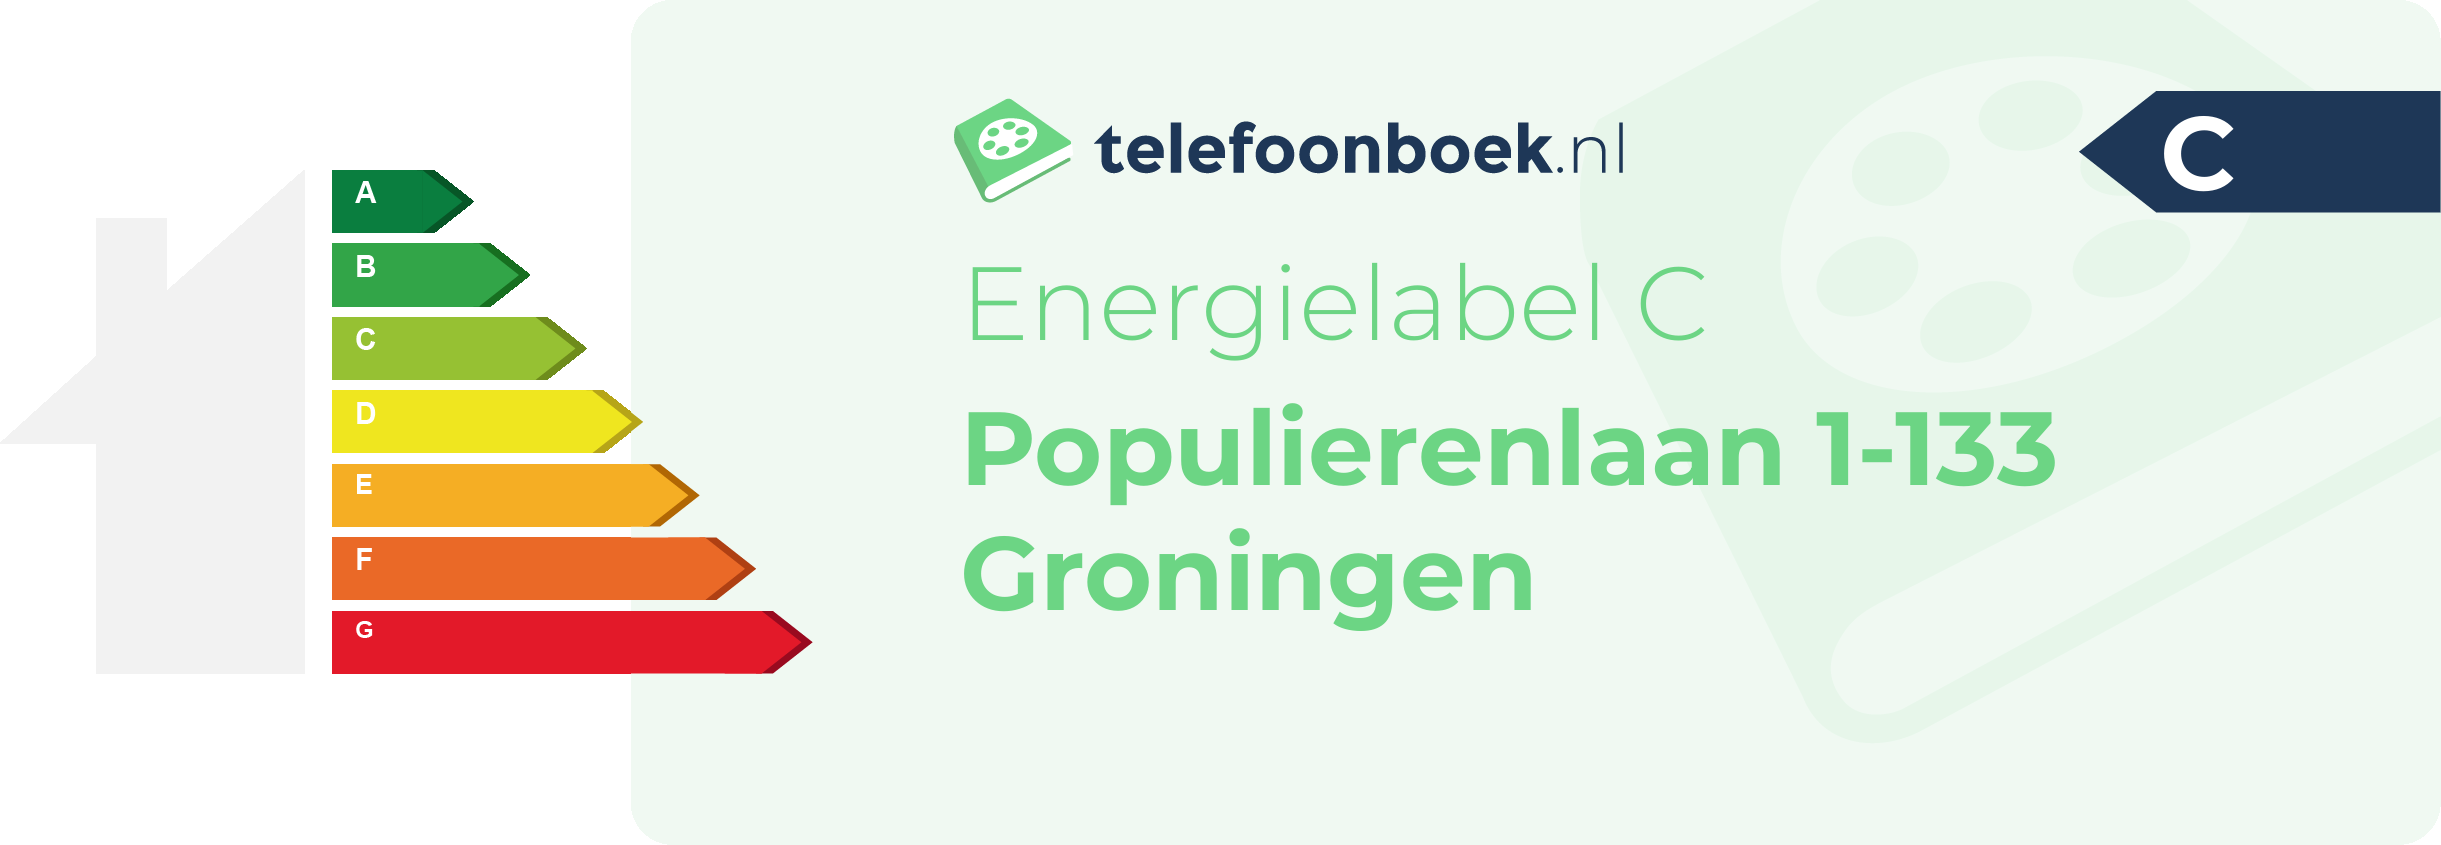 Energielabel Populierenlaan 1-133 Groningen